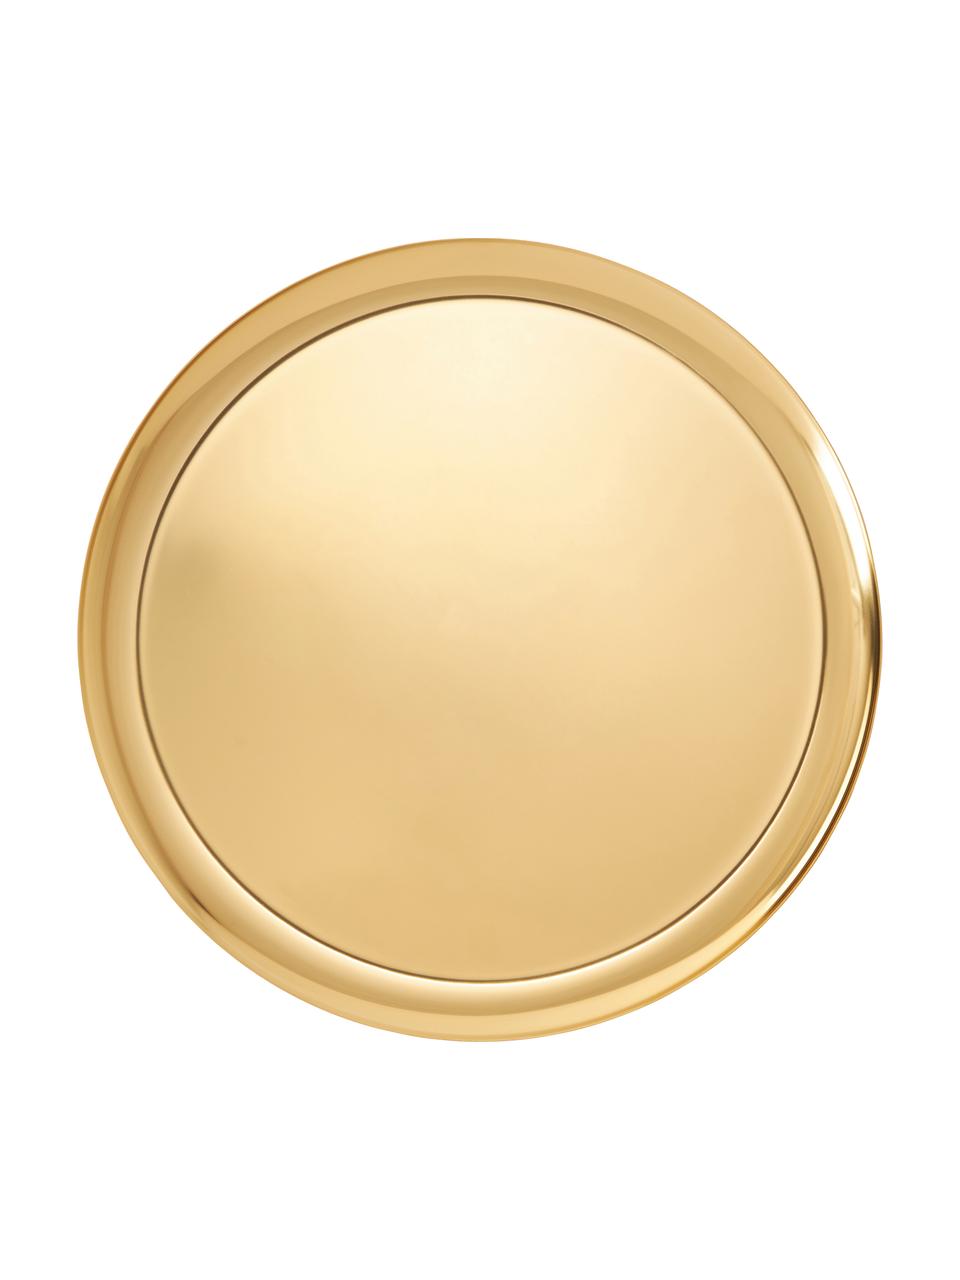 Rundes Deko-Tablett Samu in Gold, Edelstahl, Gold, Ø 28 cm, H 1 cm